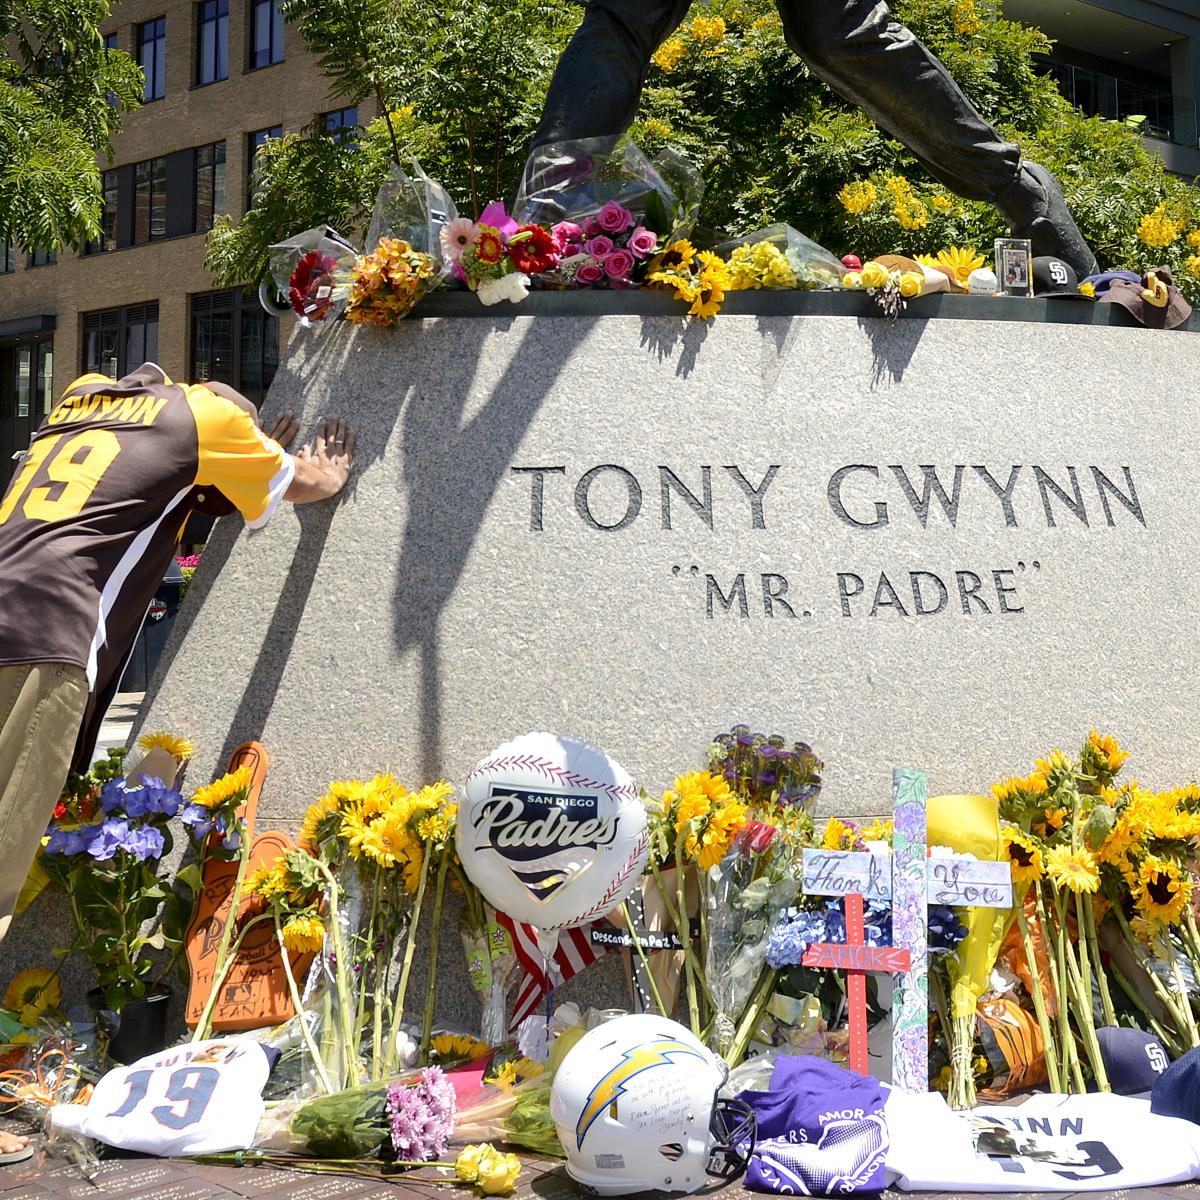 Tony Gwynn's final days: Did tobacco kill Padres legend? - Sports  Illustrated